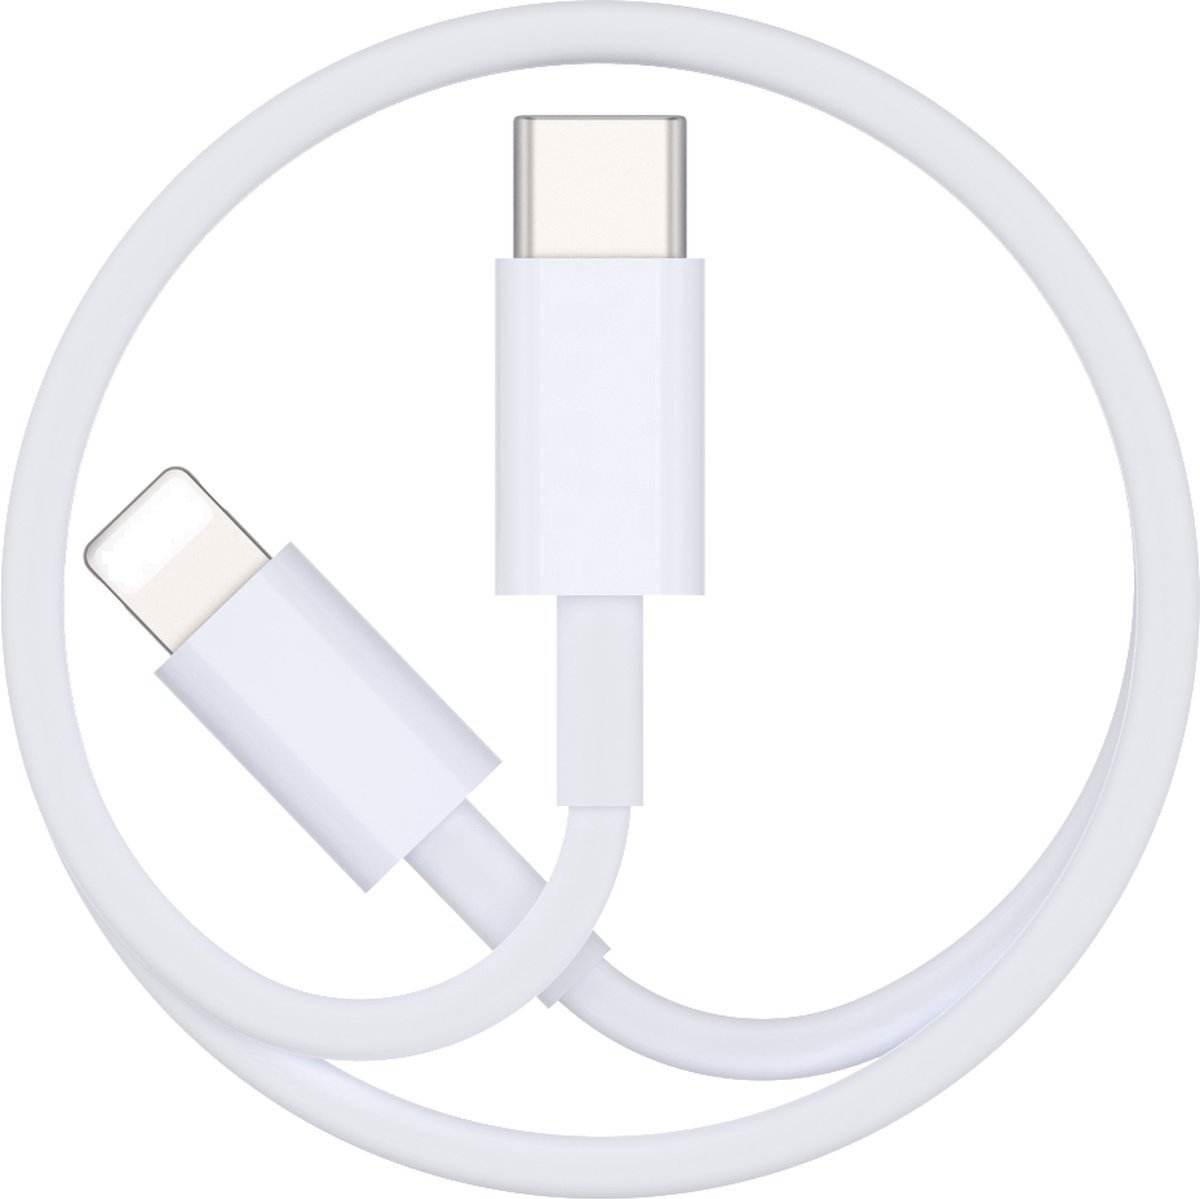 PD kabel Geschikt voor: Apple iPhone 5 / 6 / 7 / 8 / X / XS / XR / 11 / 12 / 13 / 14 / Mini / Pro Max - kabel - oplaadkabel - USB-C / Type-C Geschikt voor Lightning USB kabel - Snellader - laadkabel - 1 Meter - LuxeBass